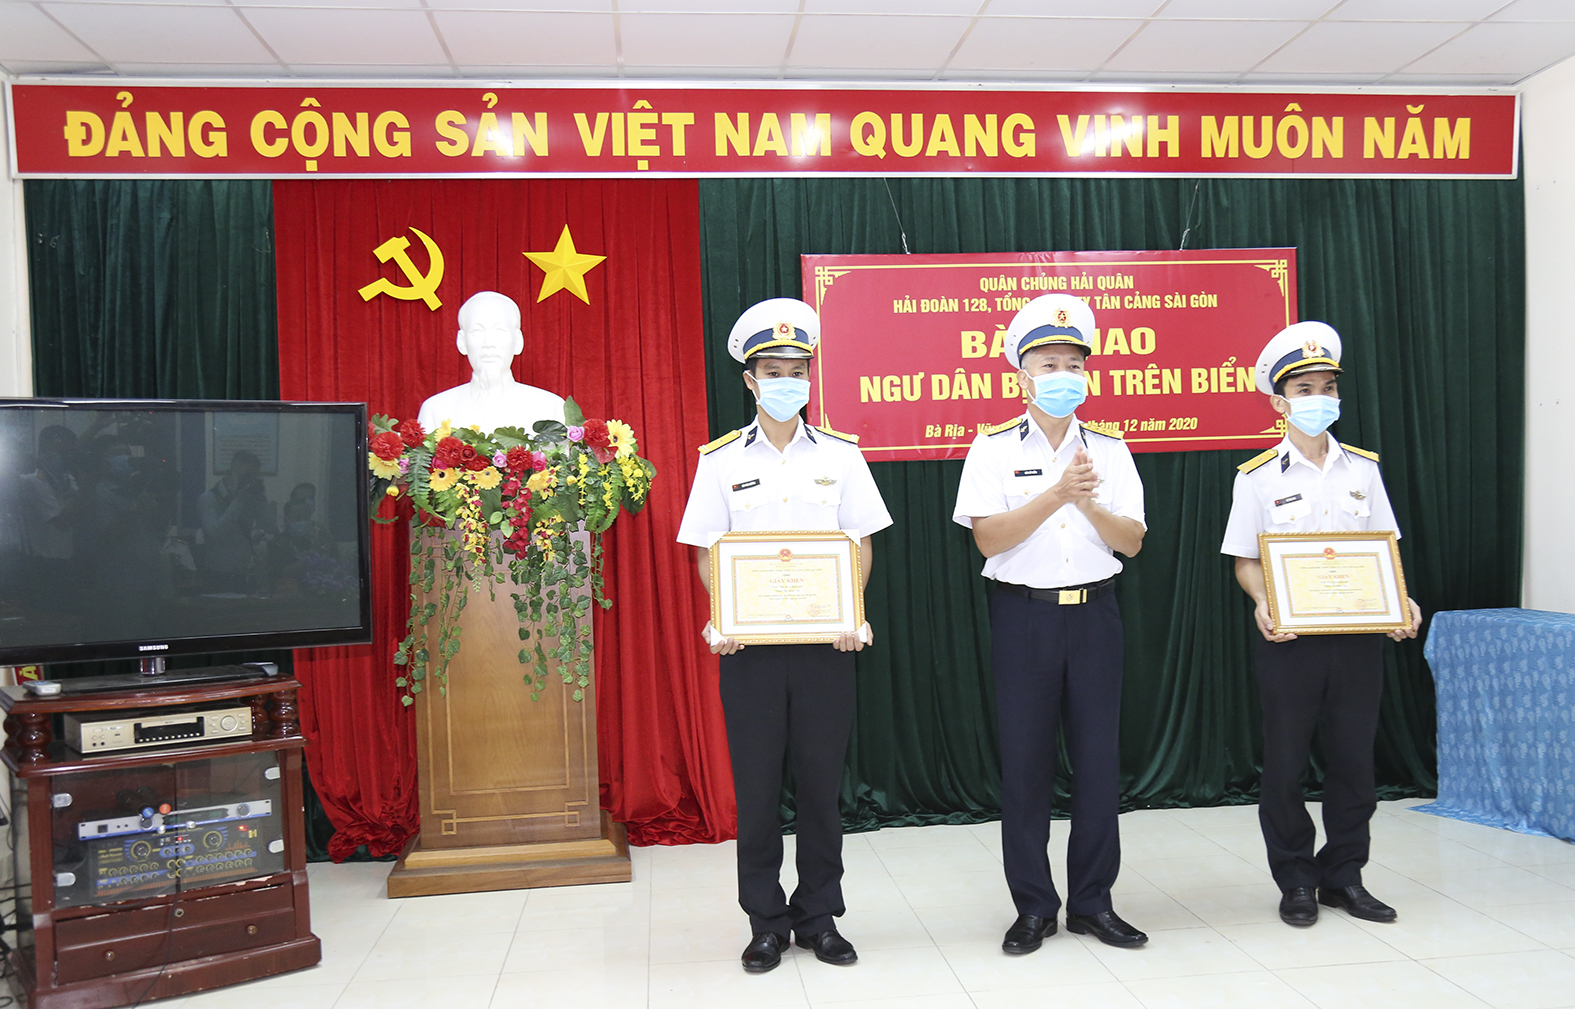 Đại tá Bùi Sỹ Tuấn, Phó Tổng Giám đốc Tổng Công ty Tân Cảng Sài Gòn trao thưởng cho các tập thể có thành tích cứu nạn, giúp đỡ ngư dân.